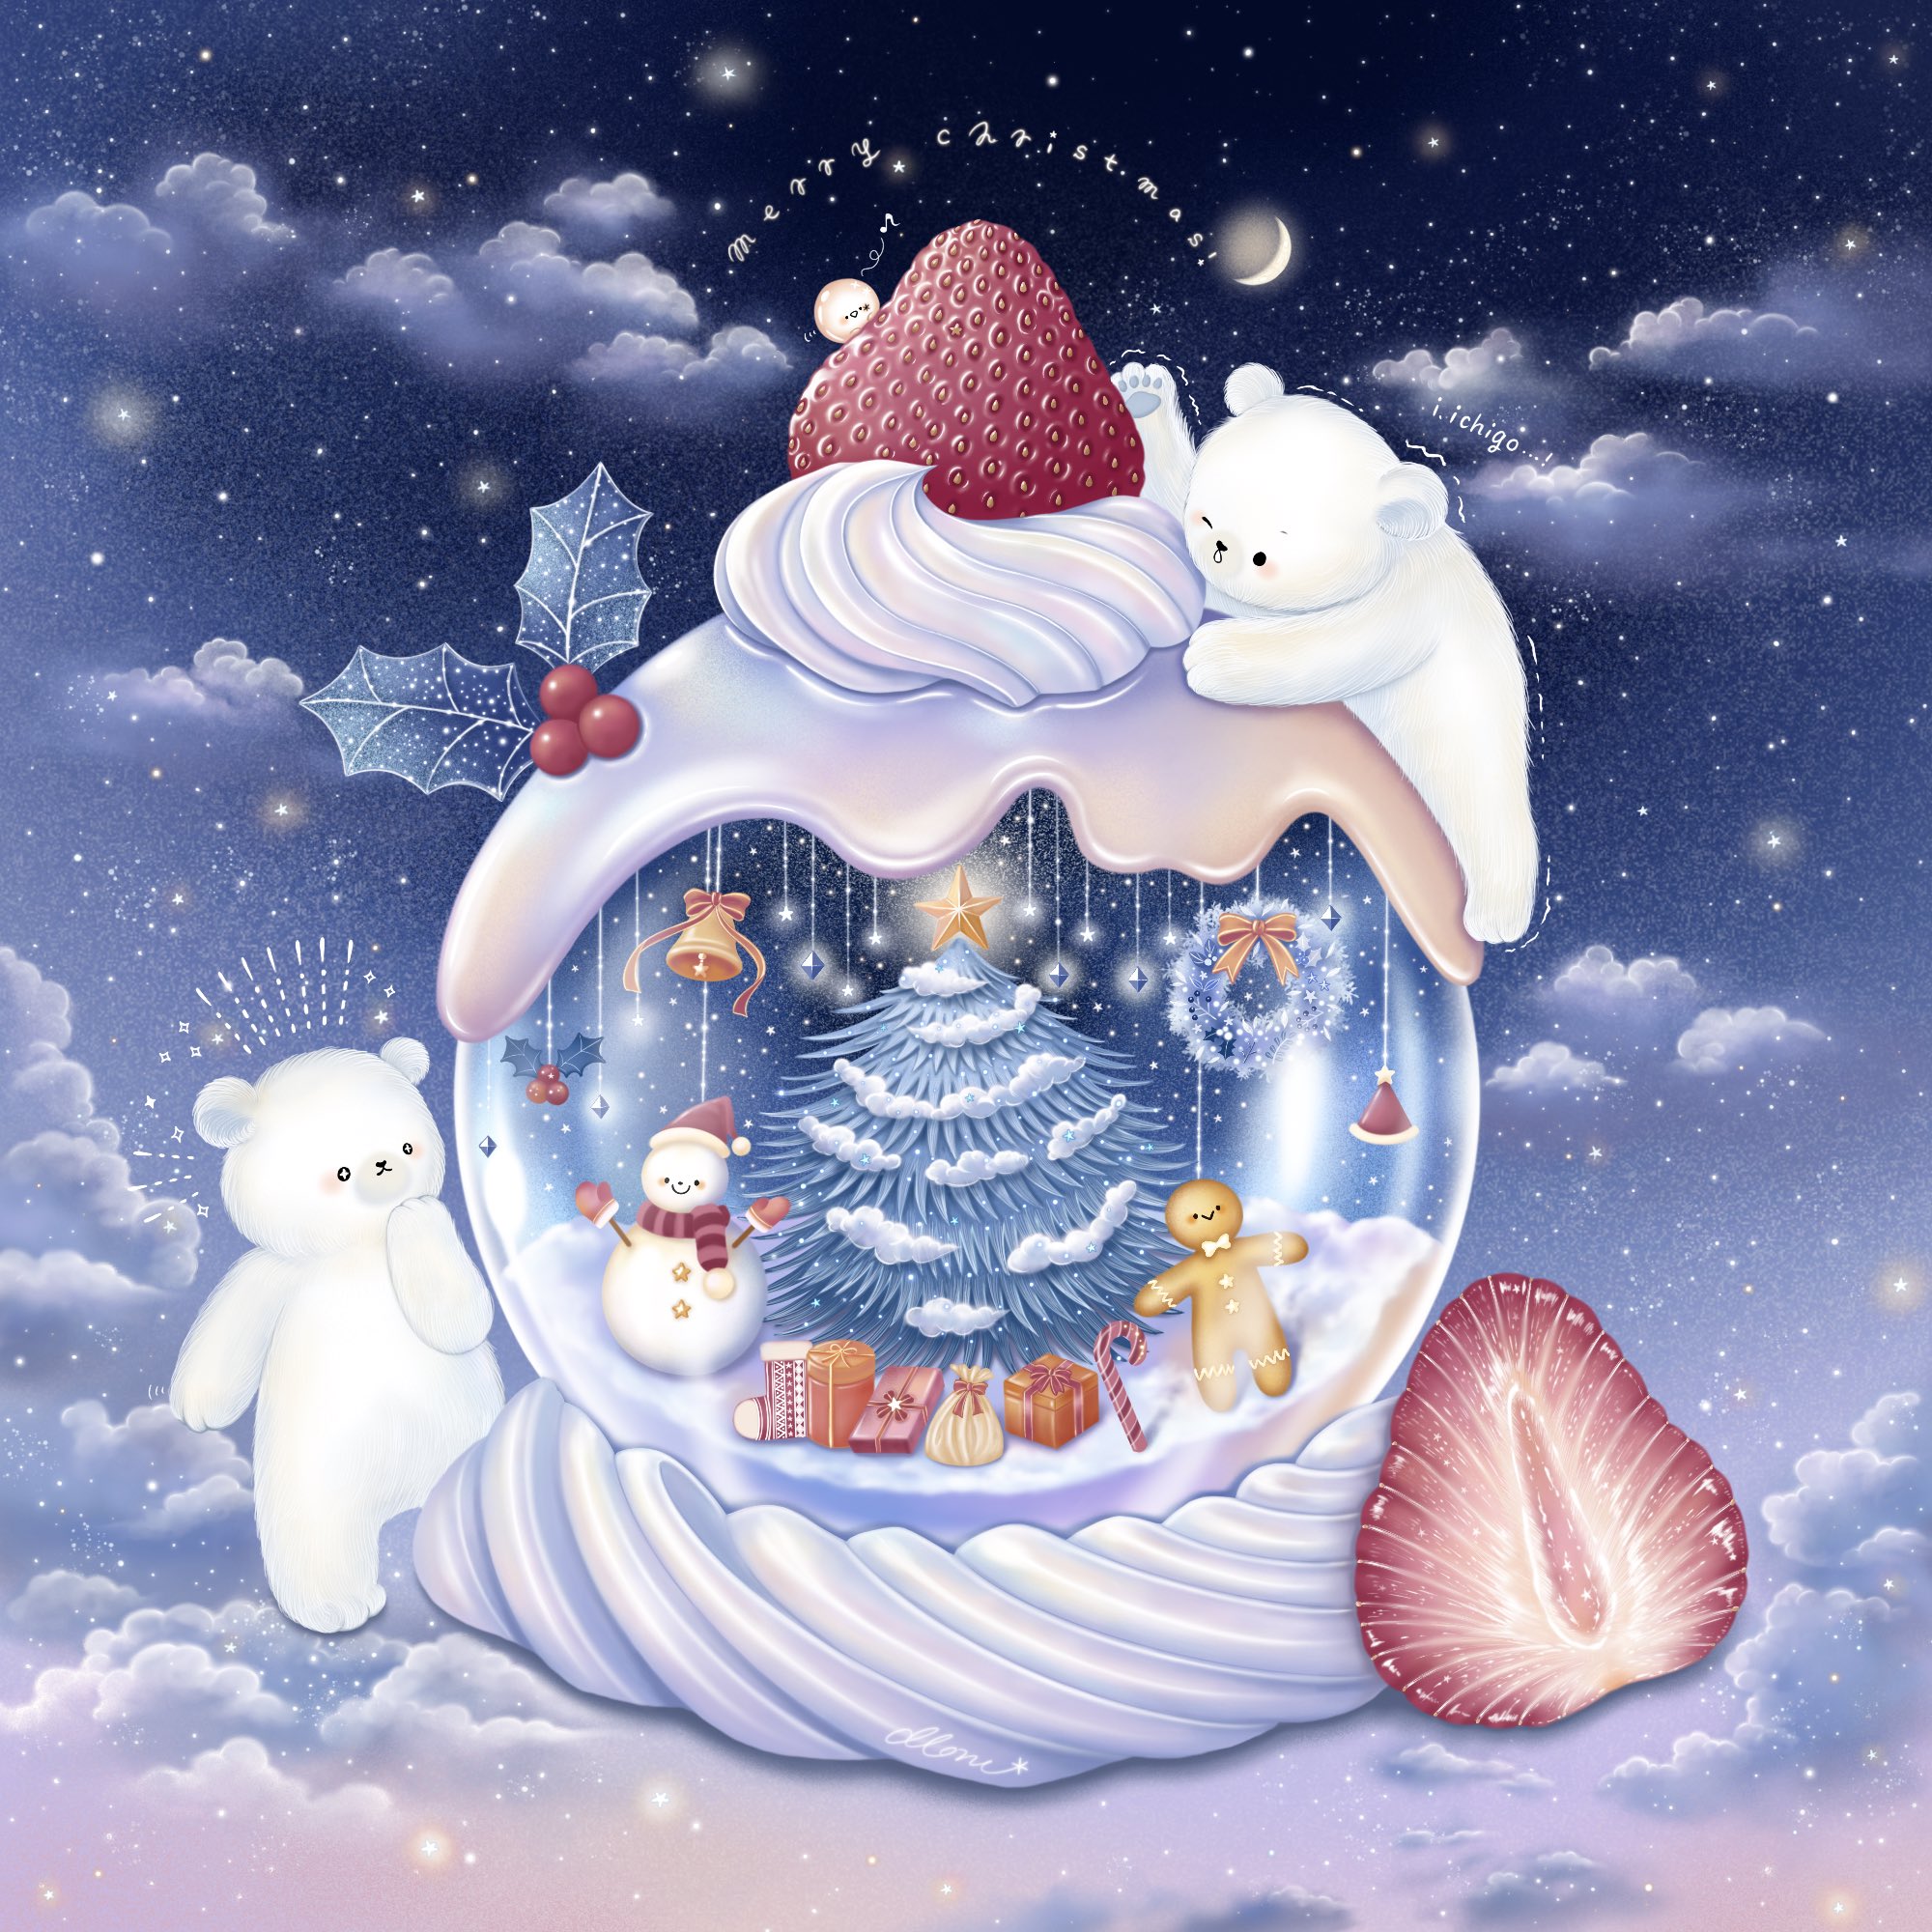 Moru 聖夜のスノードームケーキ Christmas イラスト T Co 61ahta6qhl Twitter